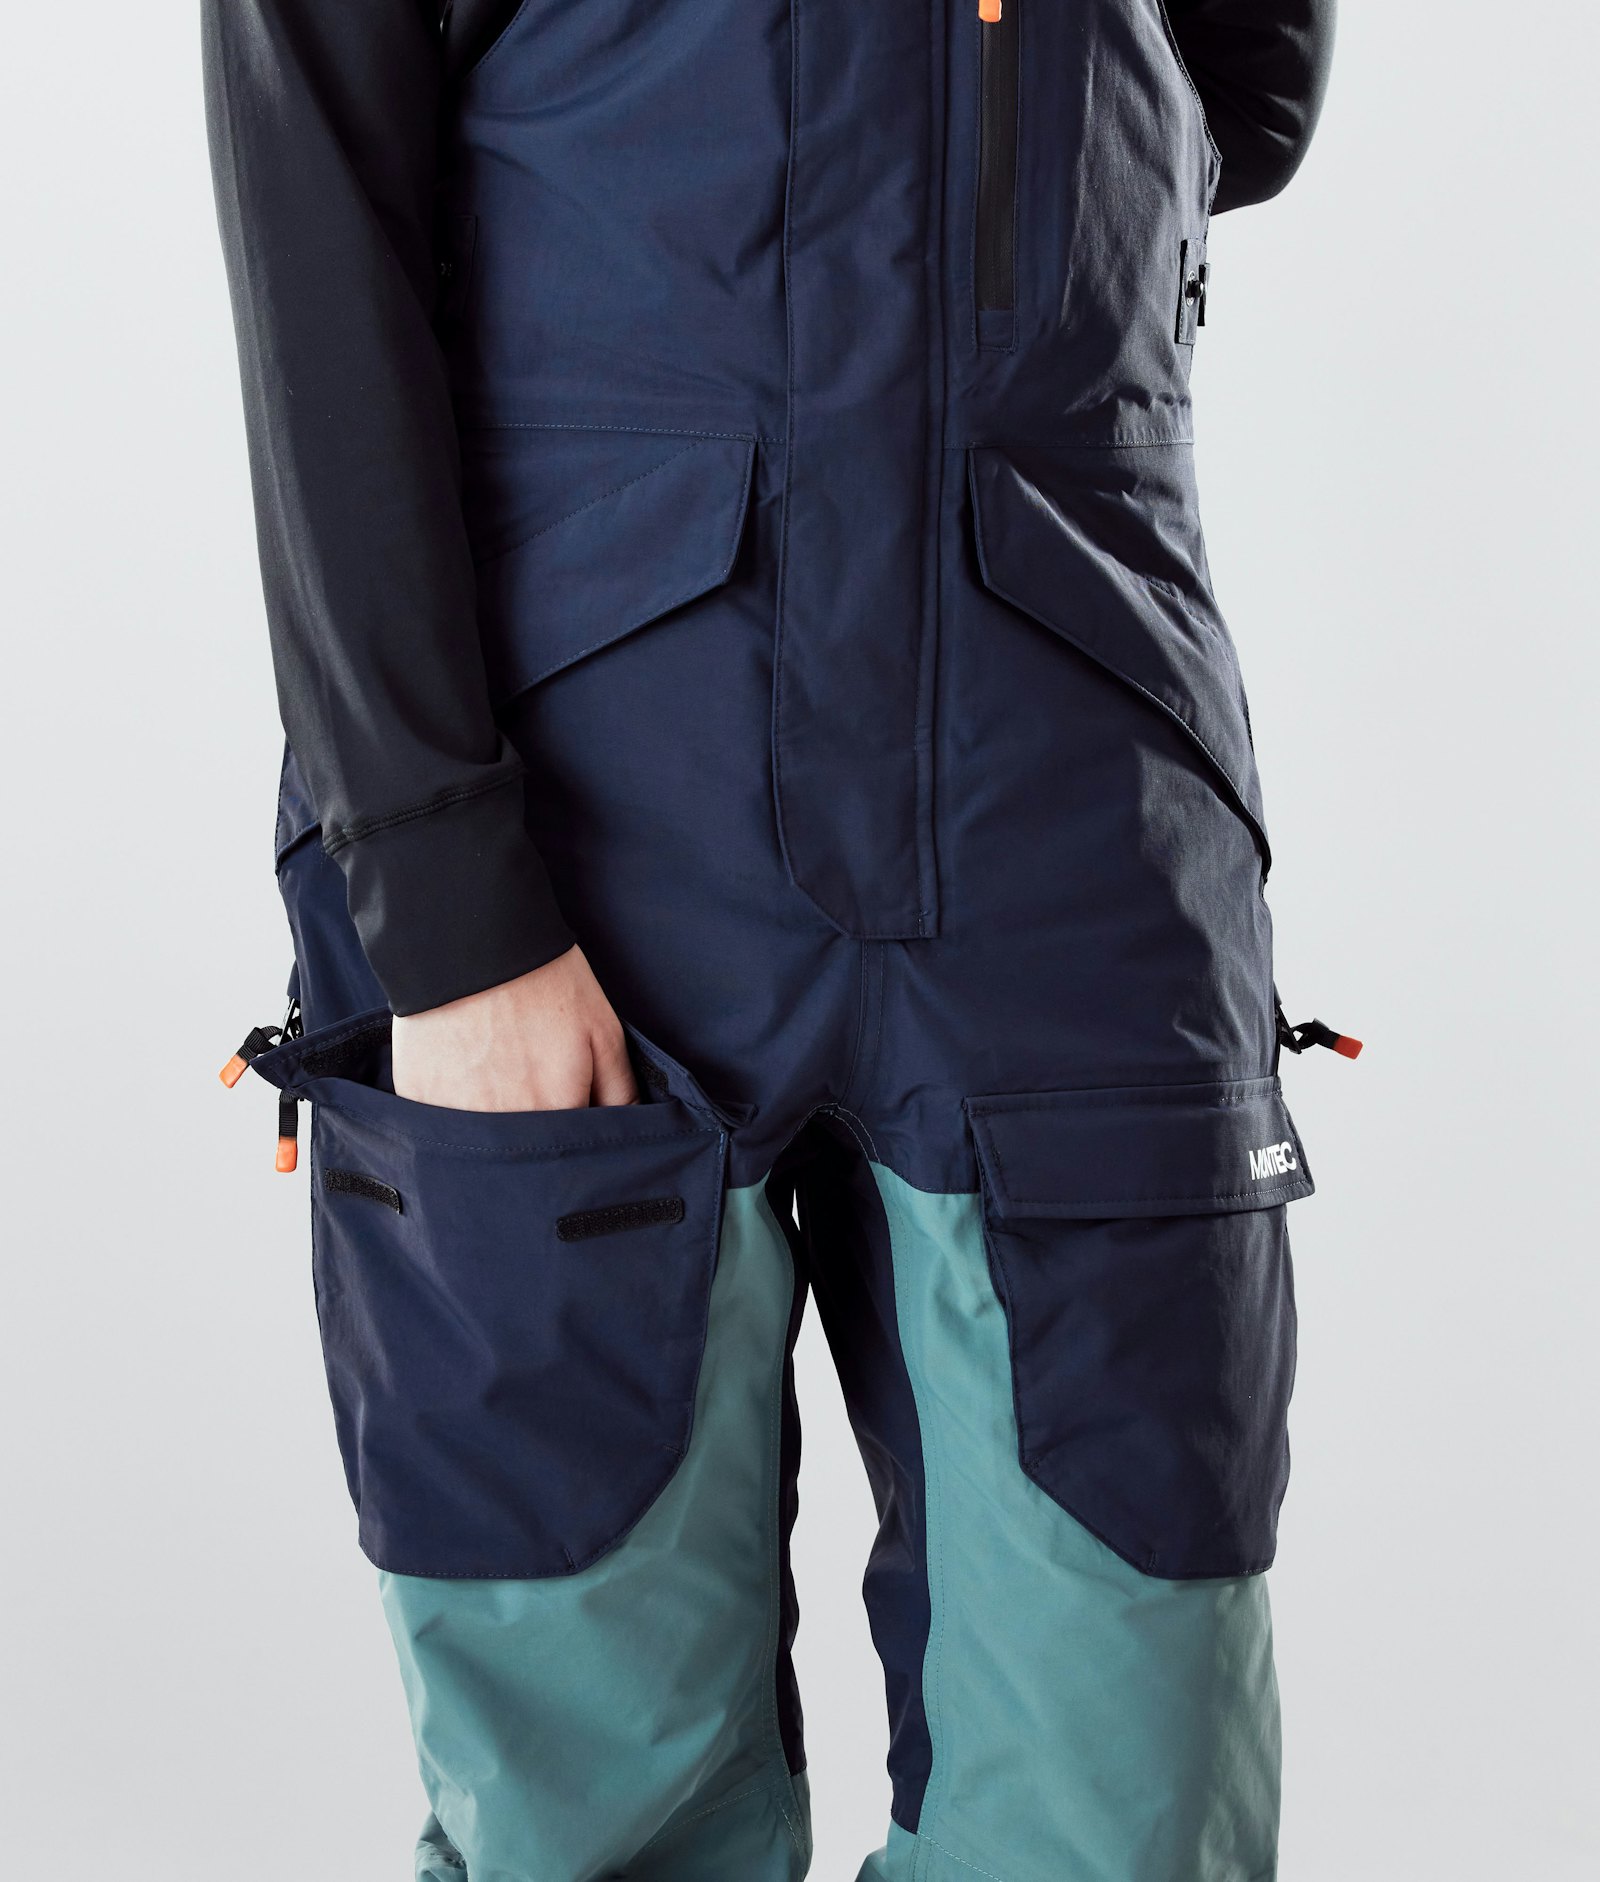 Fawk W 2020 Spodnie Snowboardowe Kobiety Marine/Atlantic/Light Grey